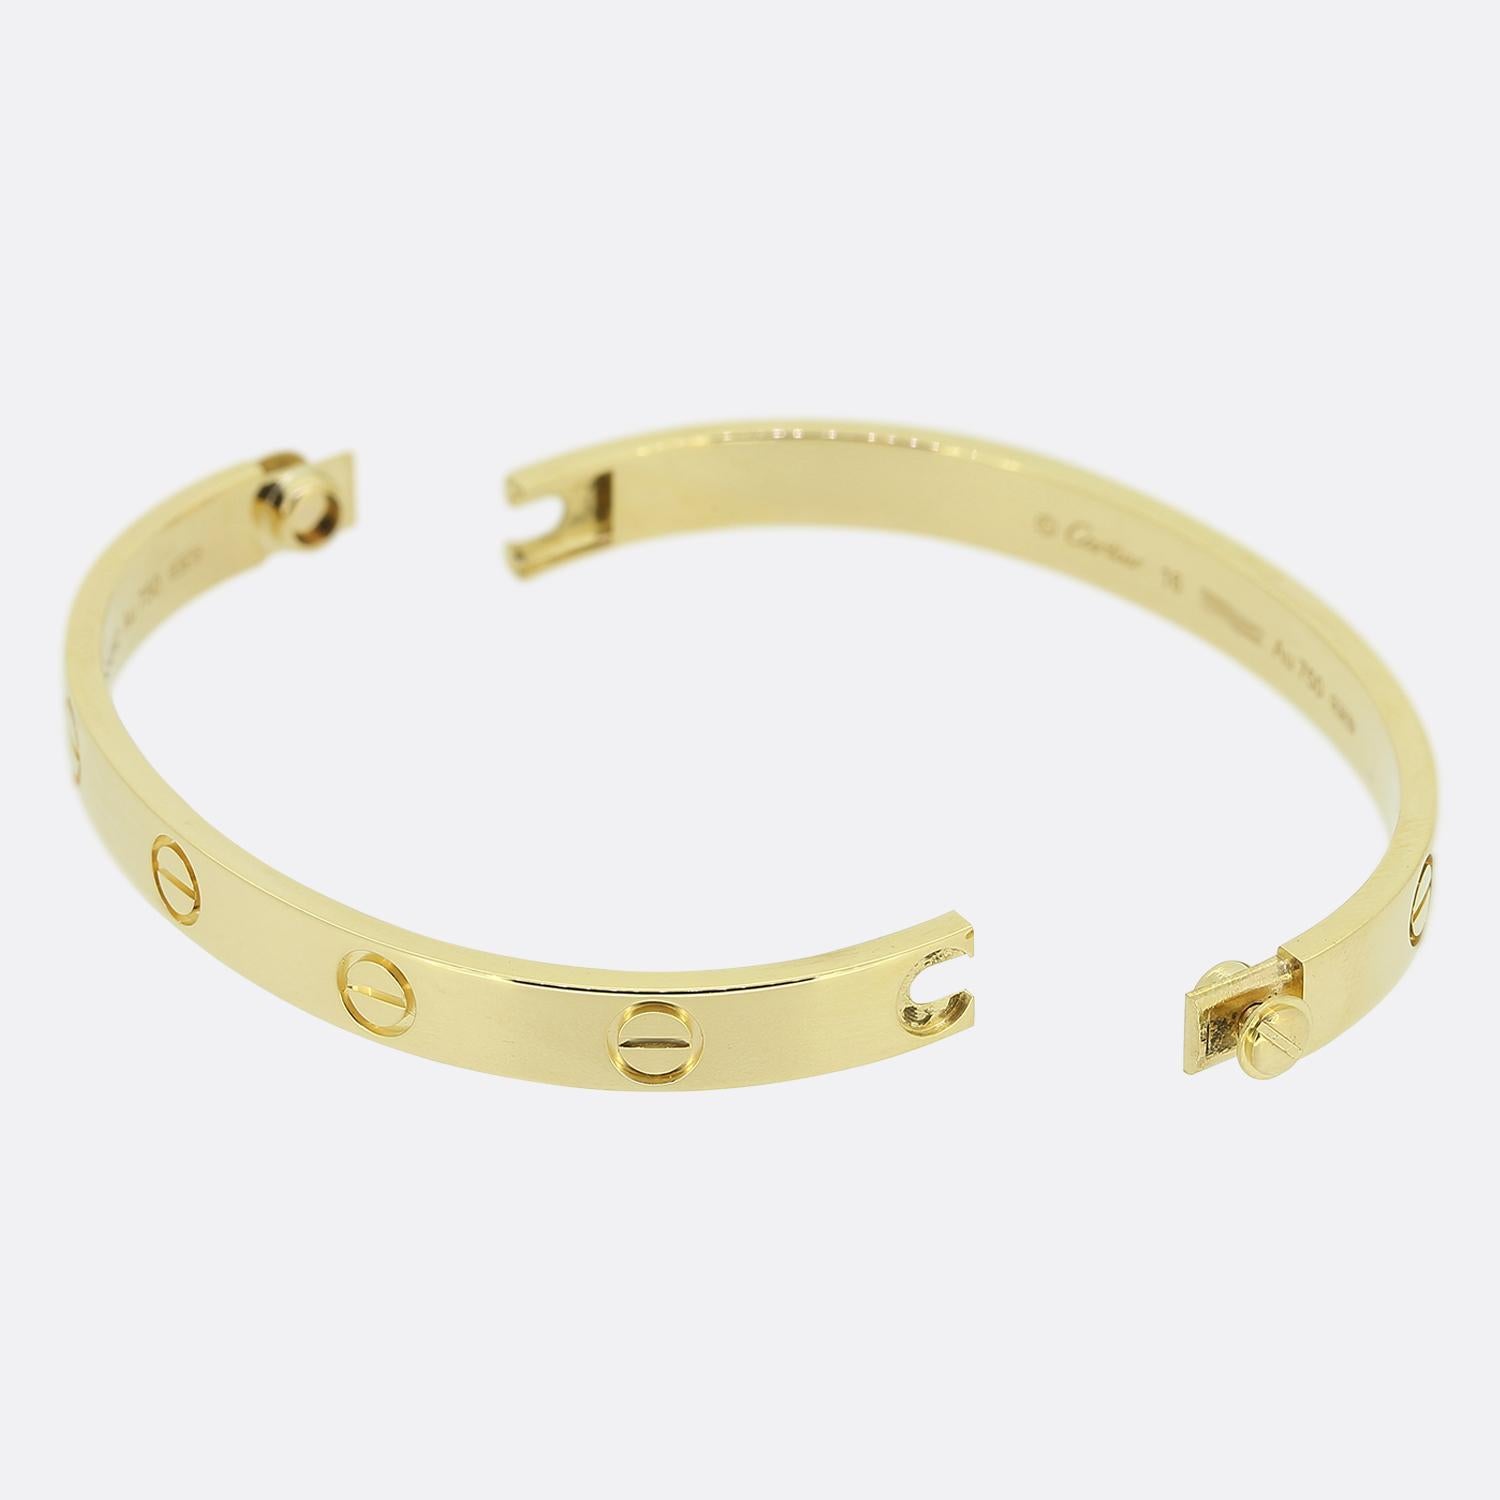 Nous avons ici un bracelet en or jaune 18ct de la maison de joaillerie de luxe mondialement connue Cartier. Ce bracelet fait partie de la collection LOVE, l'un des bijoux les plus célèbres au monde. Ce modèle particulier présente le motif iconique